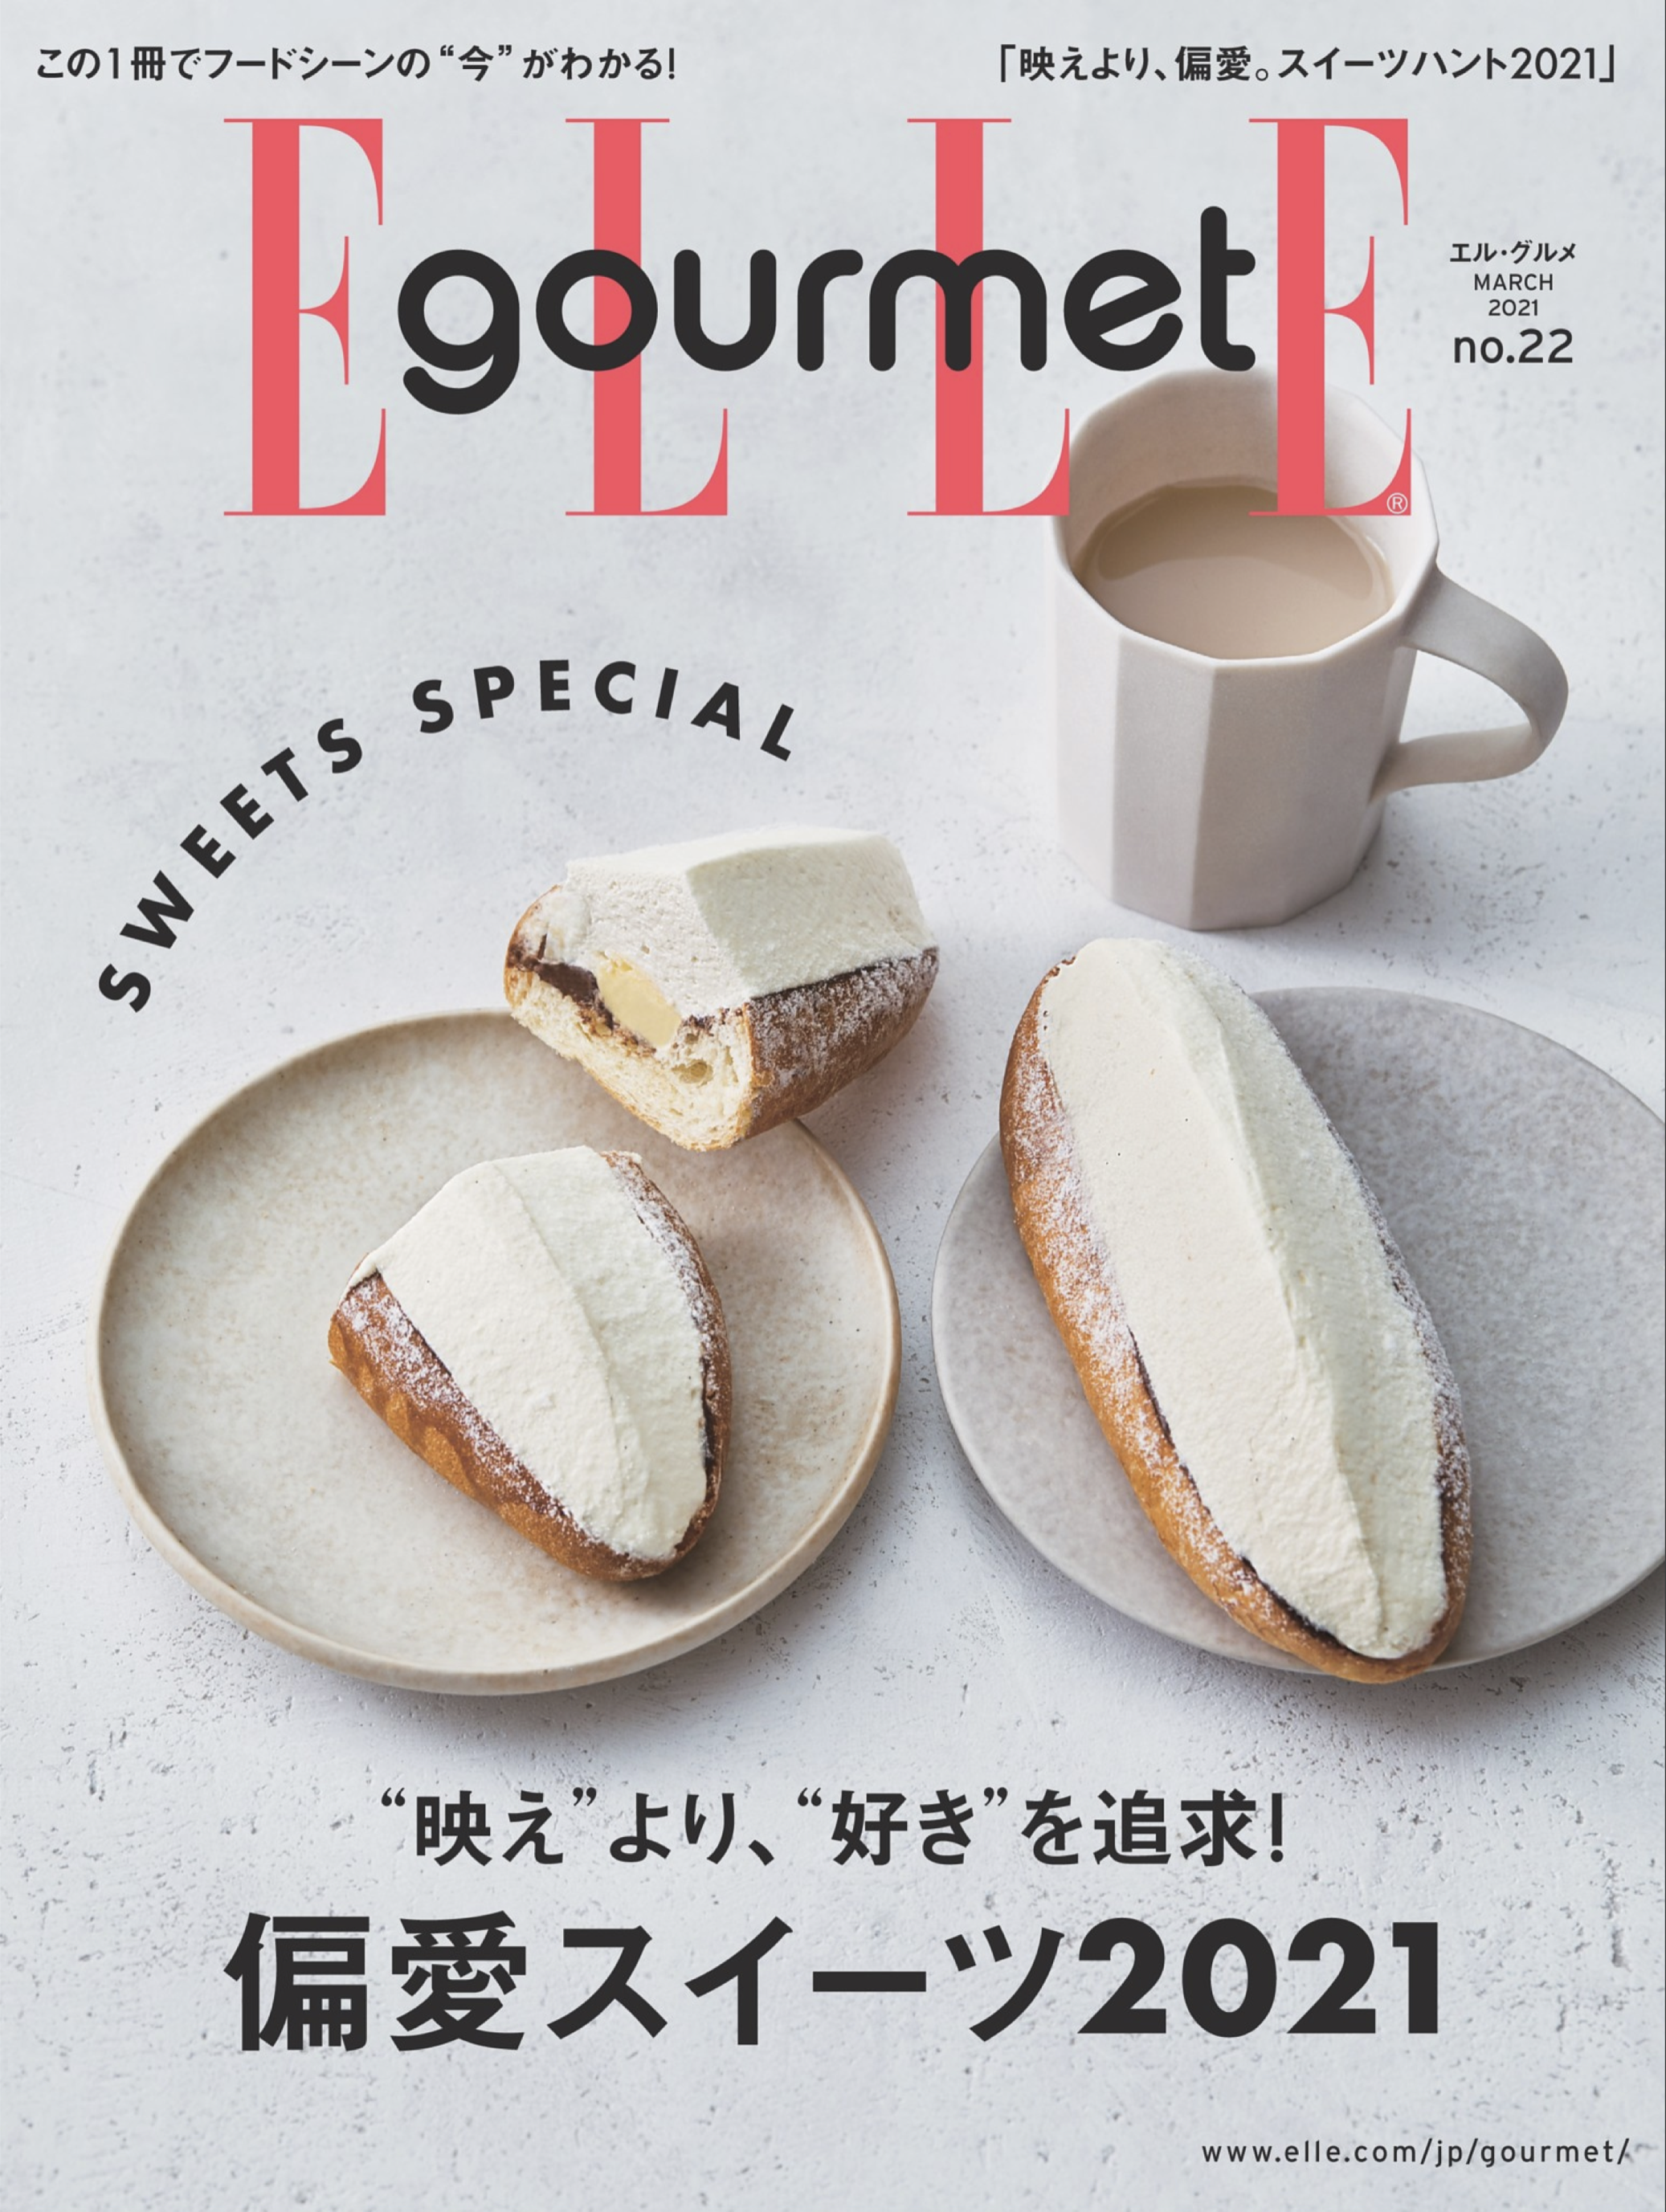 大木慎太郎がELLE gourmet 3月号の表紙と中ページを撮りおろしました